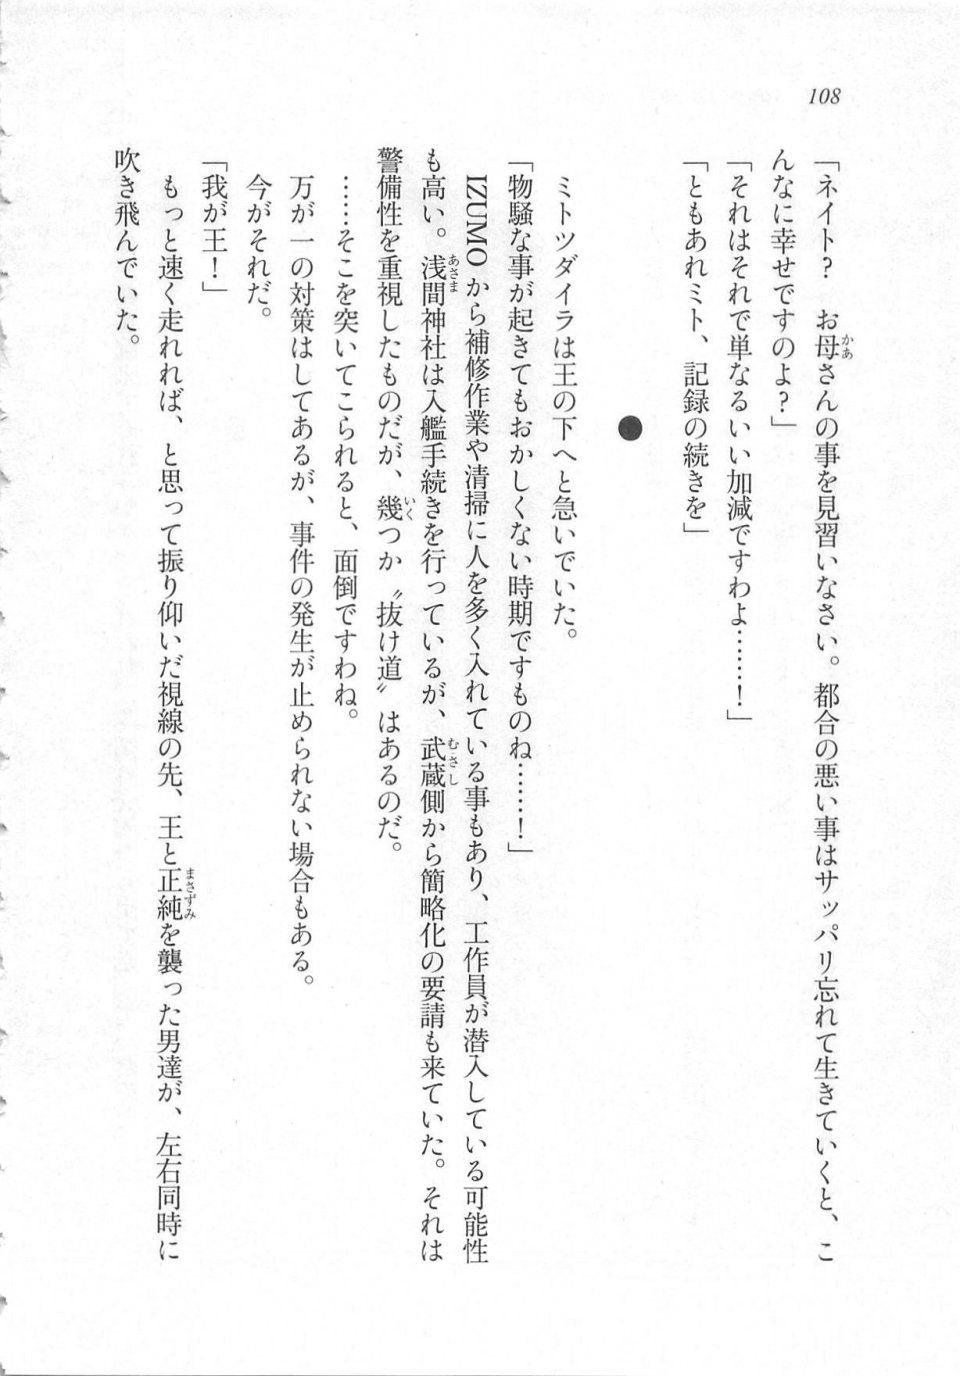 Kyoukai Senjou no Horizon LN Sidestory Vol 3 - Photo #112